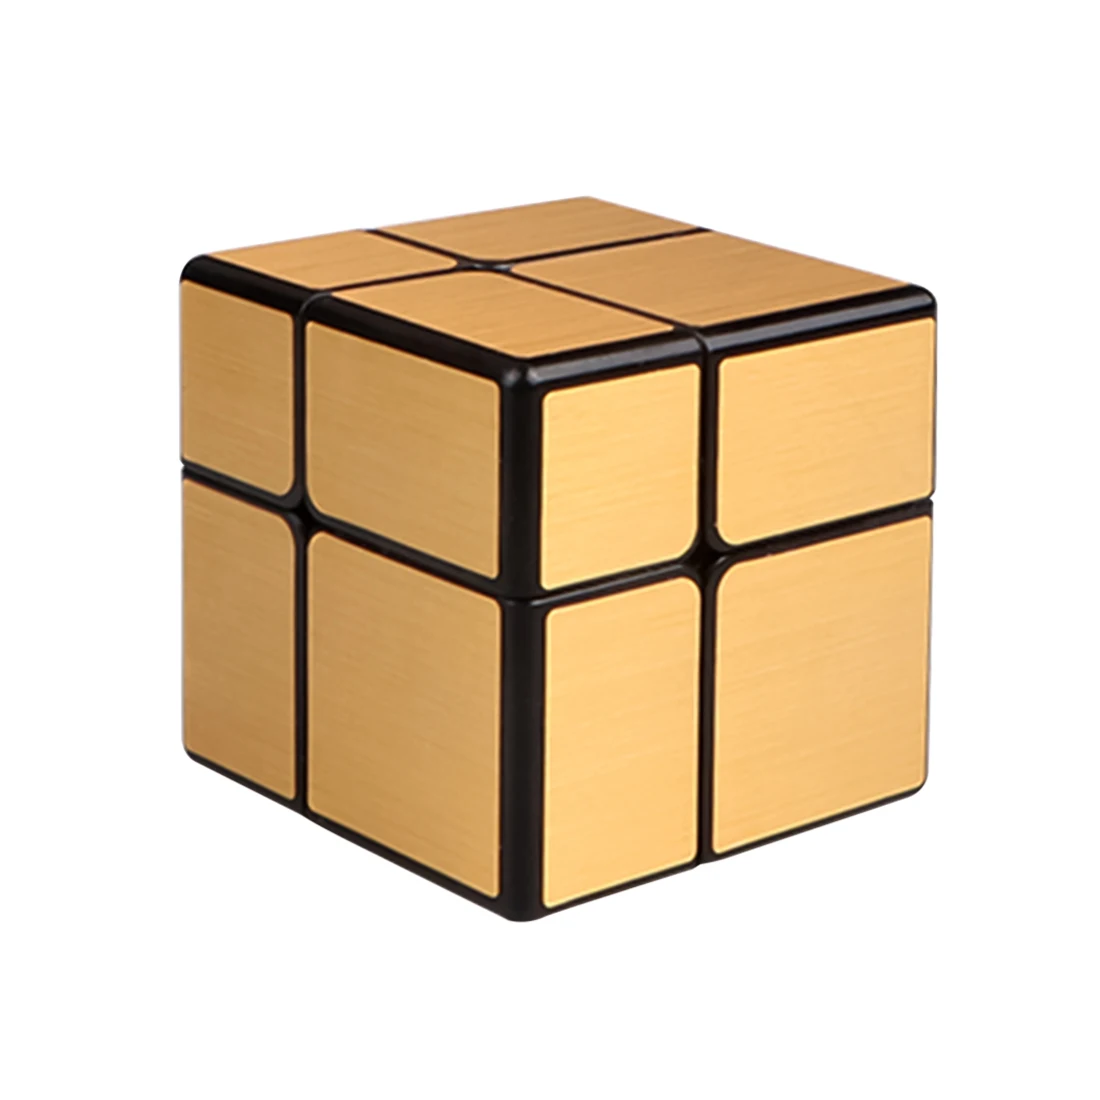 Qiyi зеркальный куб 2x2 скоростной куб 2x2x2 Волшебный Куб Головоломка Развивающие игрушки для детей Серебристые/золотистые зеркальные блоки